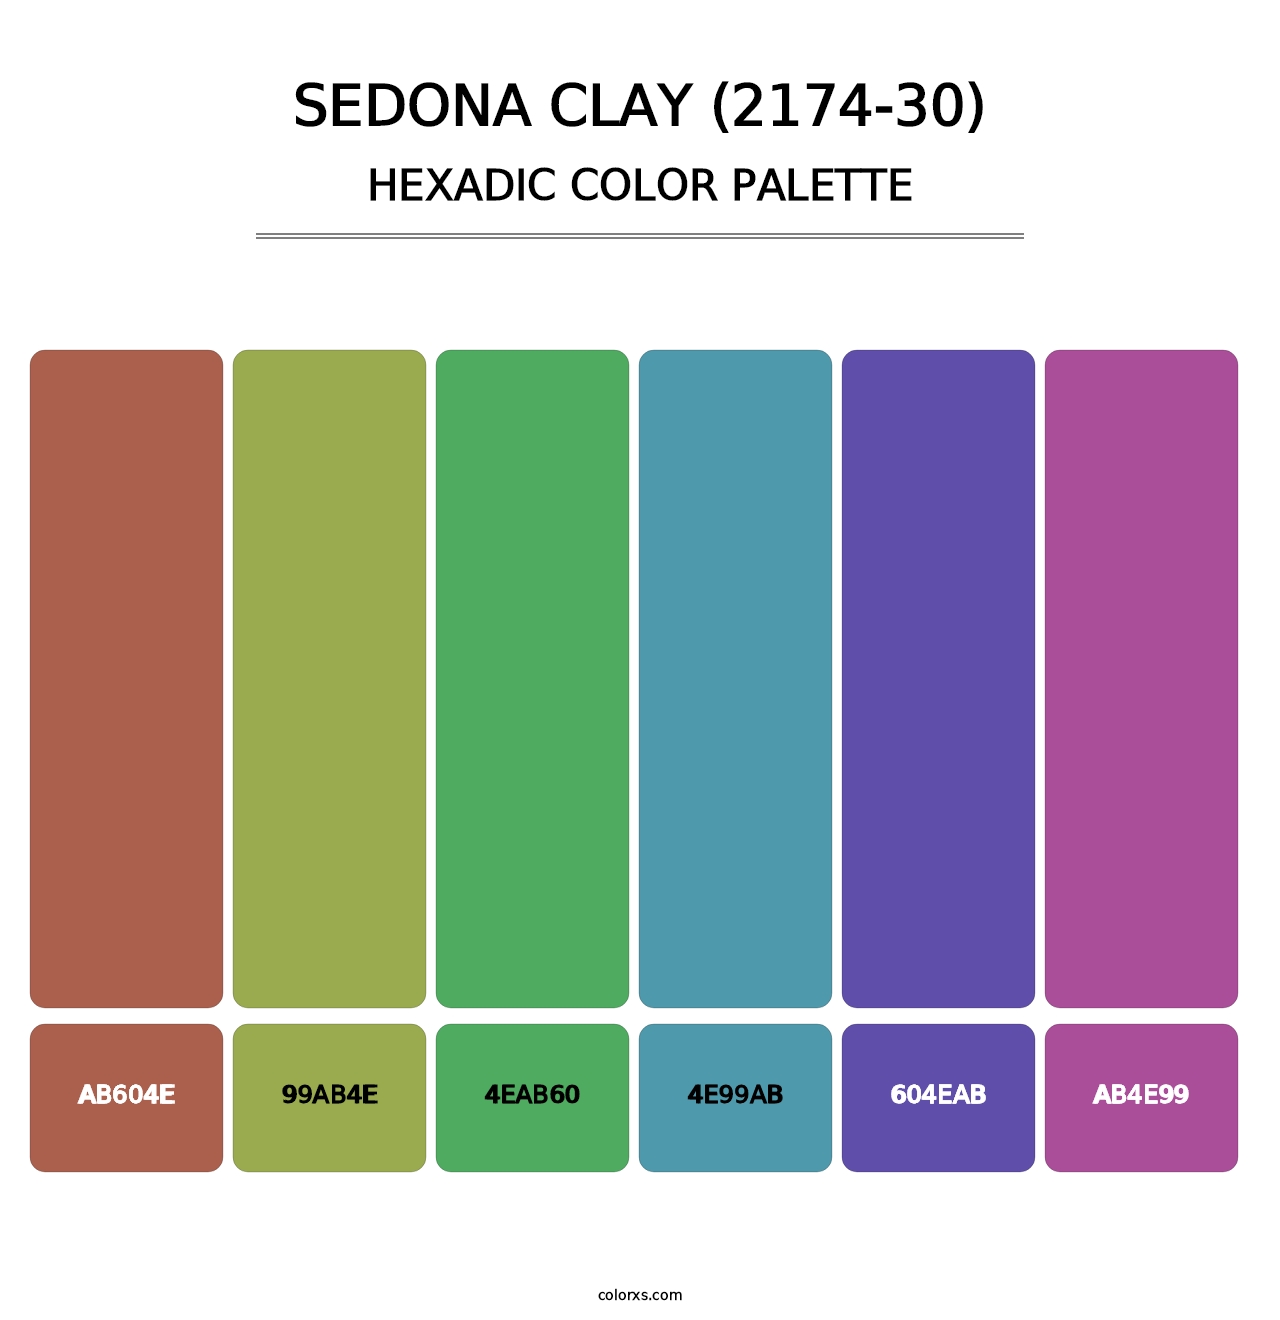 Sedona Clay (2174-30) - Hexadic Color Palette